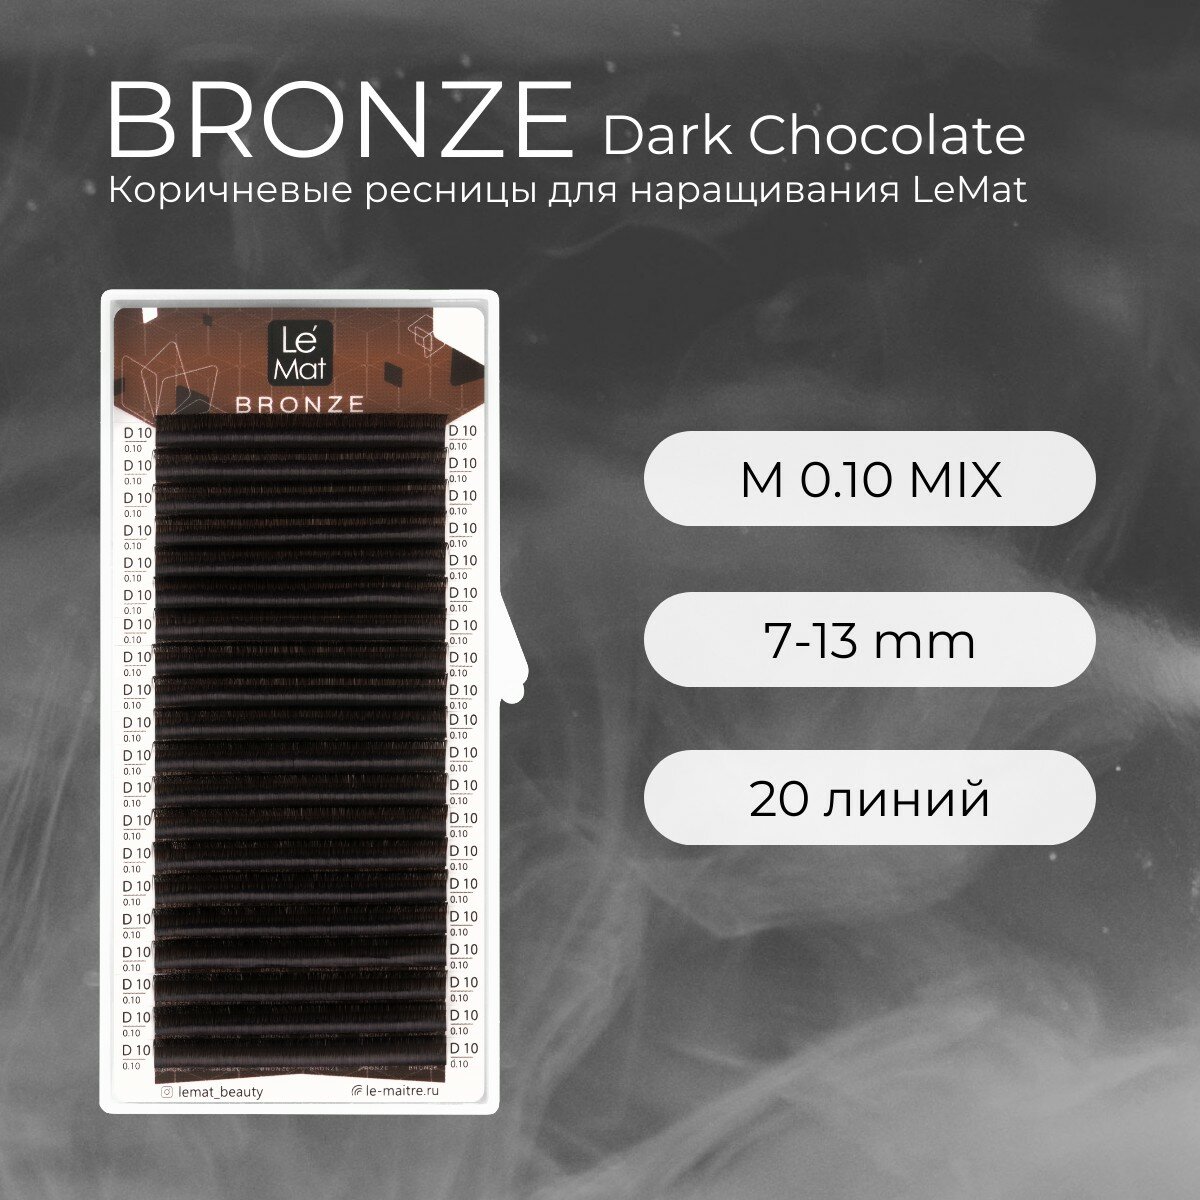 Ресницы для наращивания Dark Chocolate M 0.10 mix 7-13 mm "Bronze" 20 линий Le Maitre / Le Mat (Ле Мат / коричневые микс)